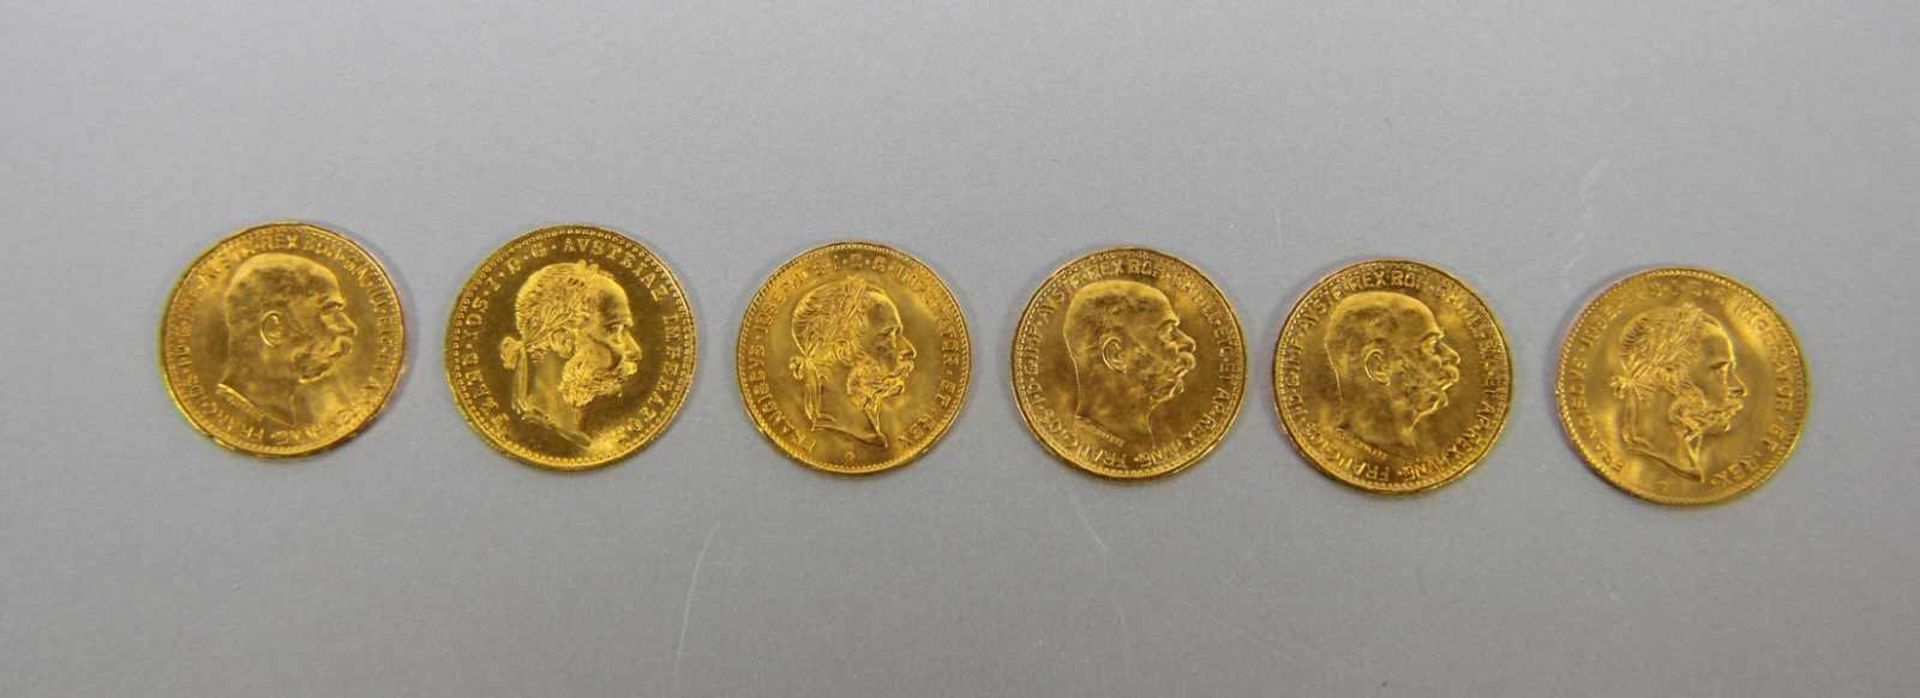 Konvolut österr. Goldmünzen900er und 986er GG, 6 Goldmünzen Österreich je mit versch. Profilen